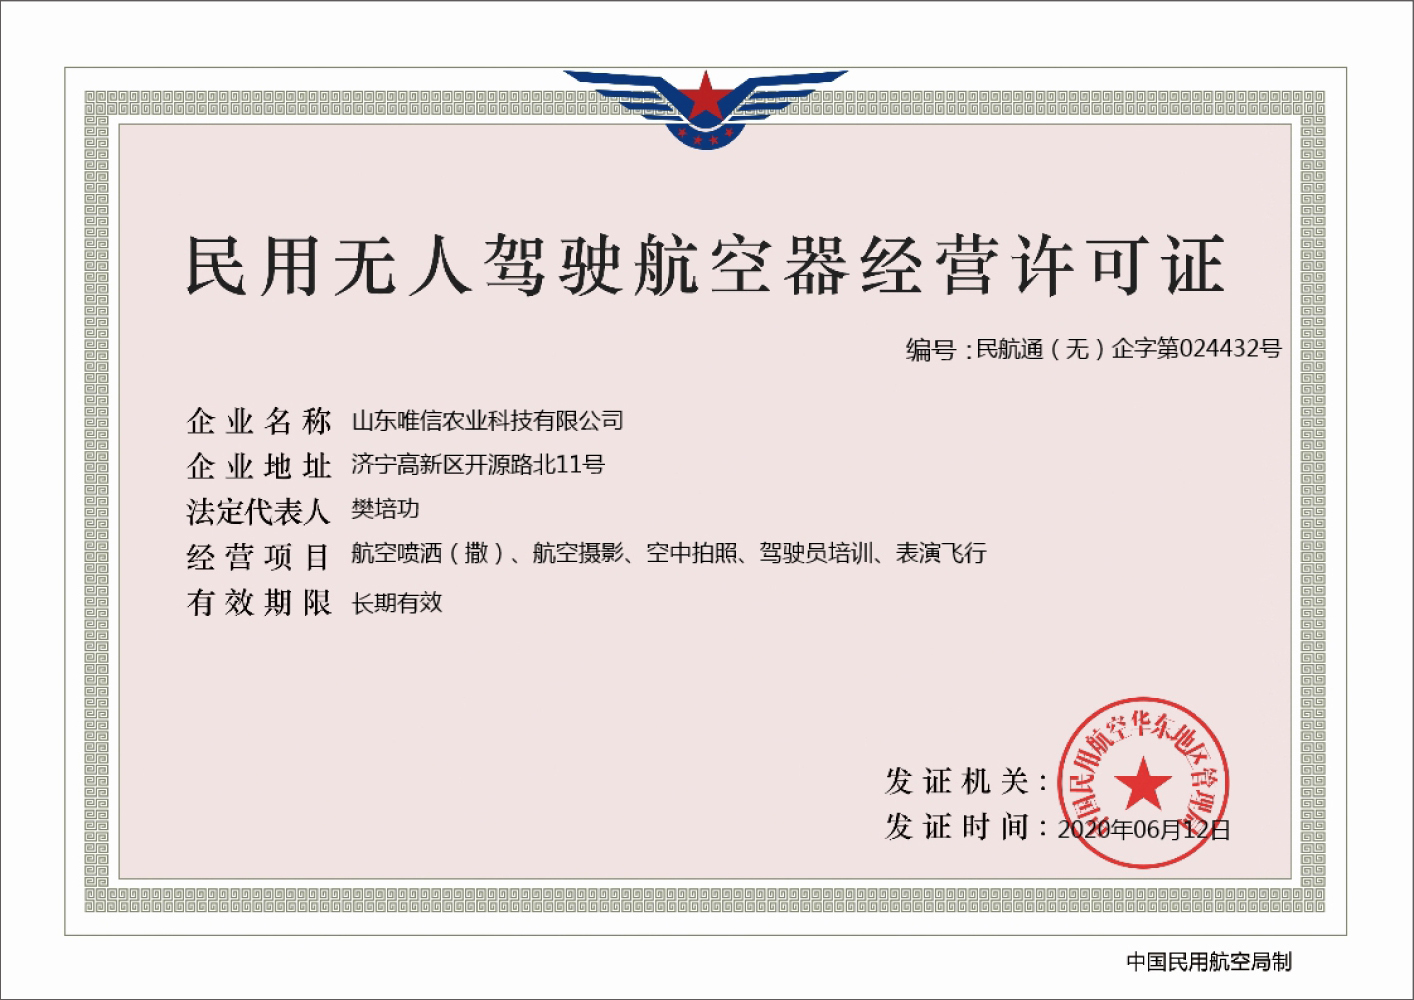 热烈祝贺中煤集团旗下唯信农业科技公司取得民用无人驾驶航空器经营许可证